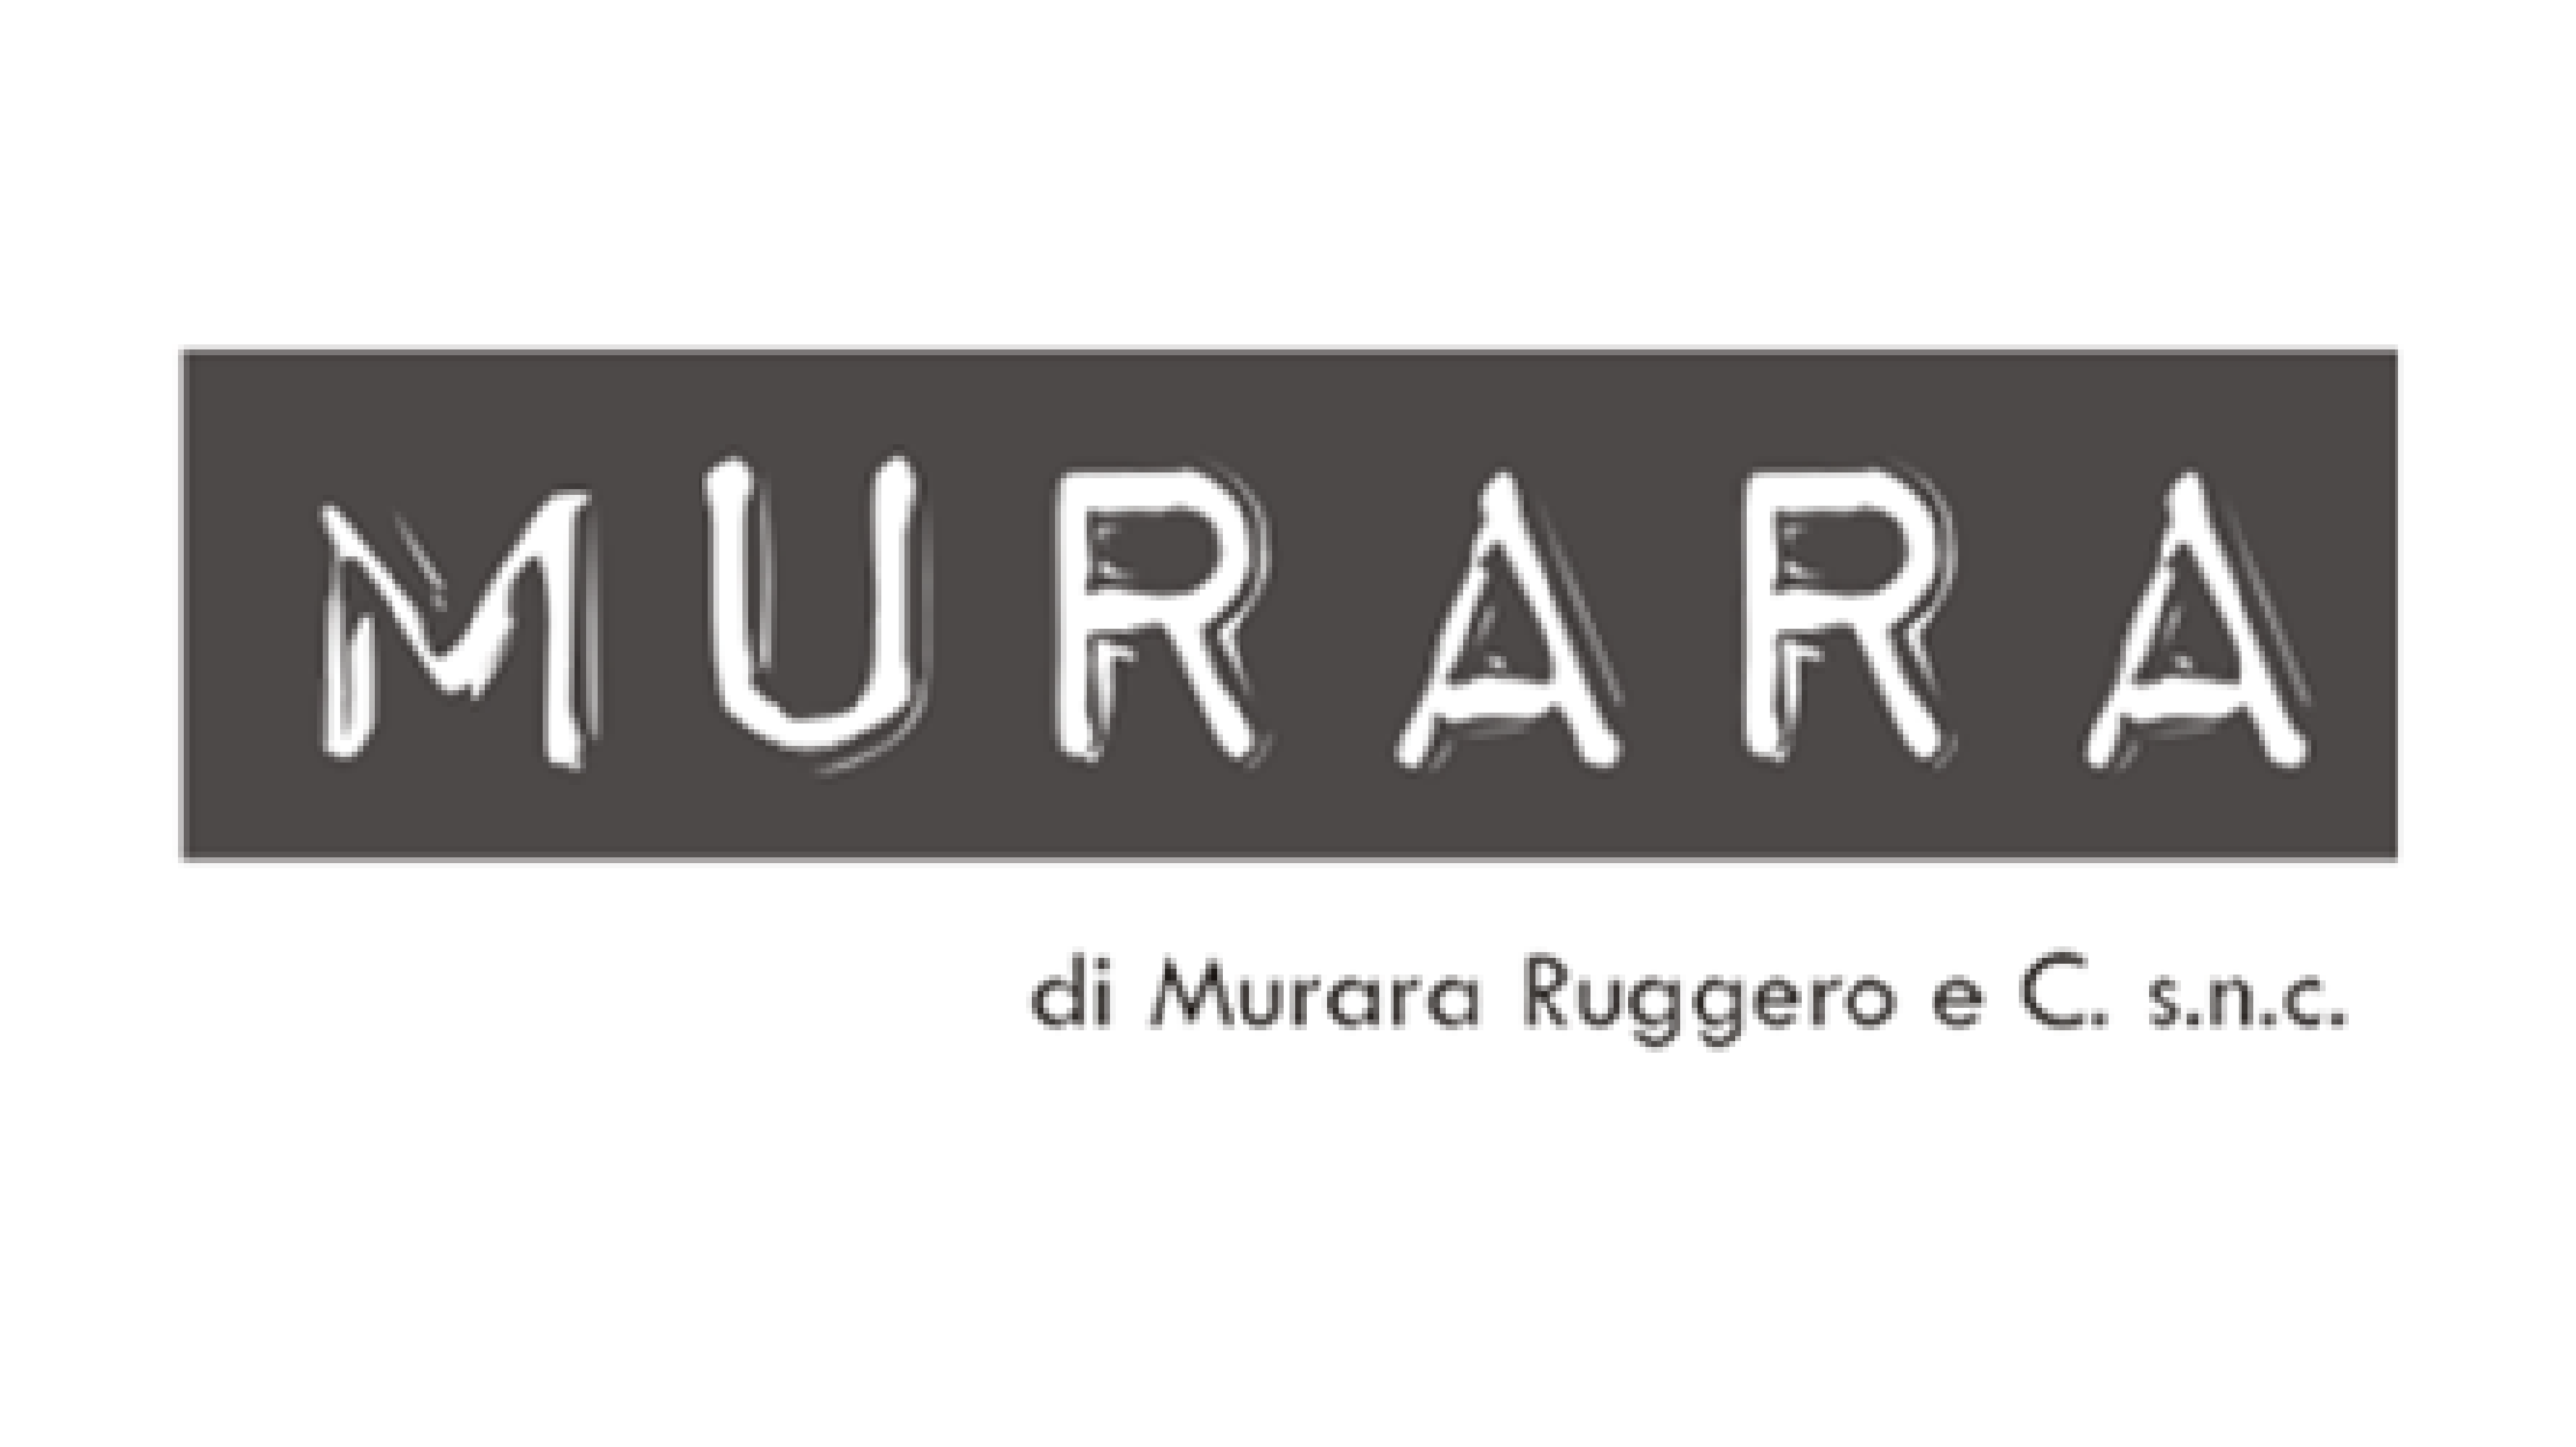 Murara Ruggero & C. S.N.C.